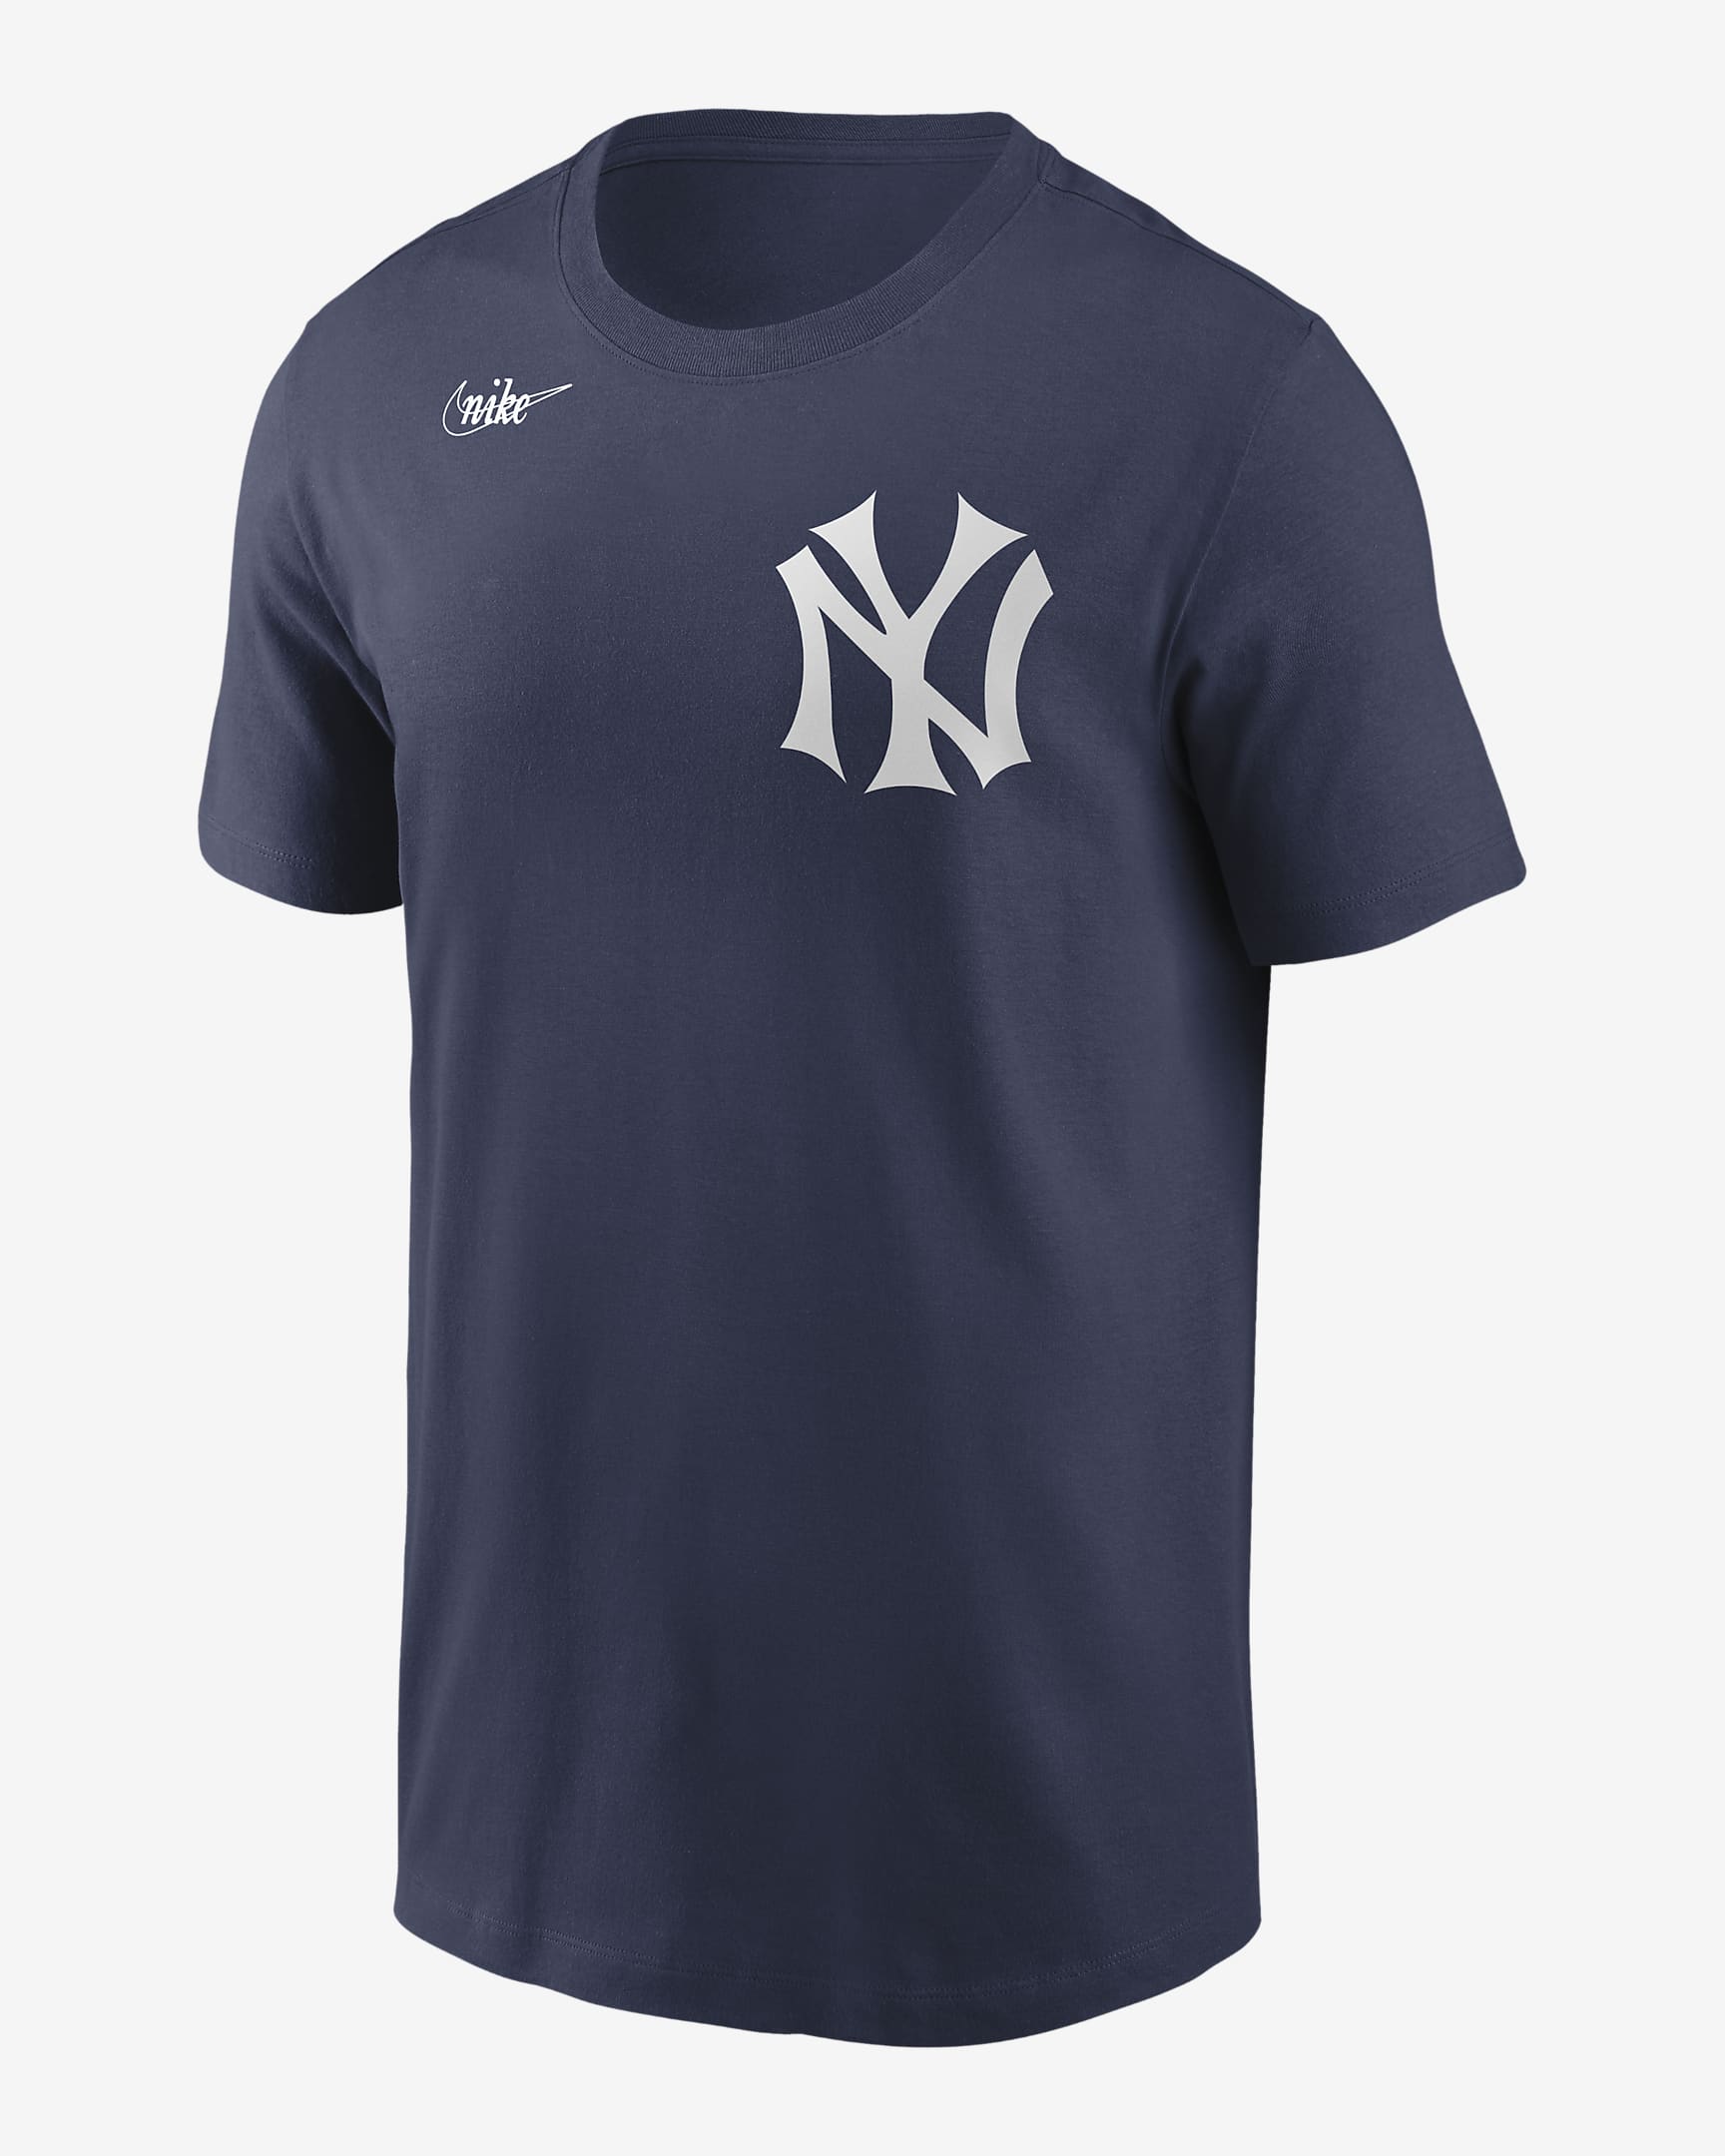 MLB New York Yankees (Babe Ruth) Men's T-Shirt. Nike.com